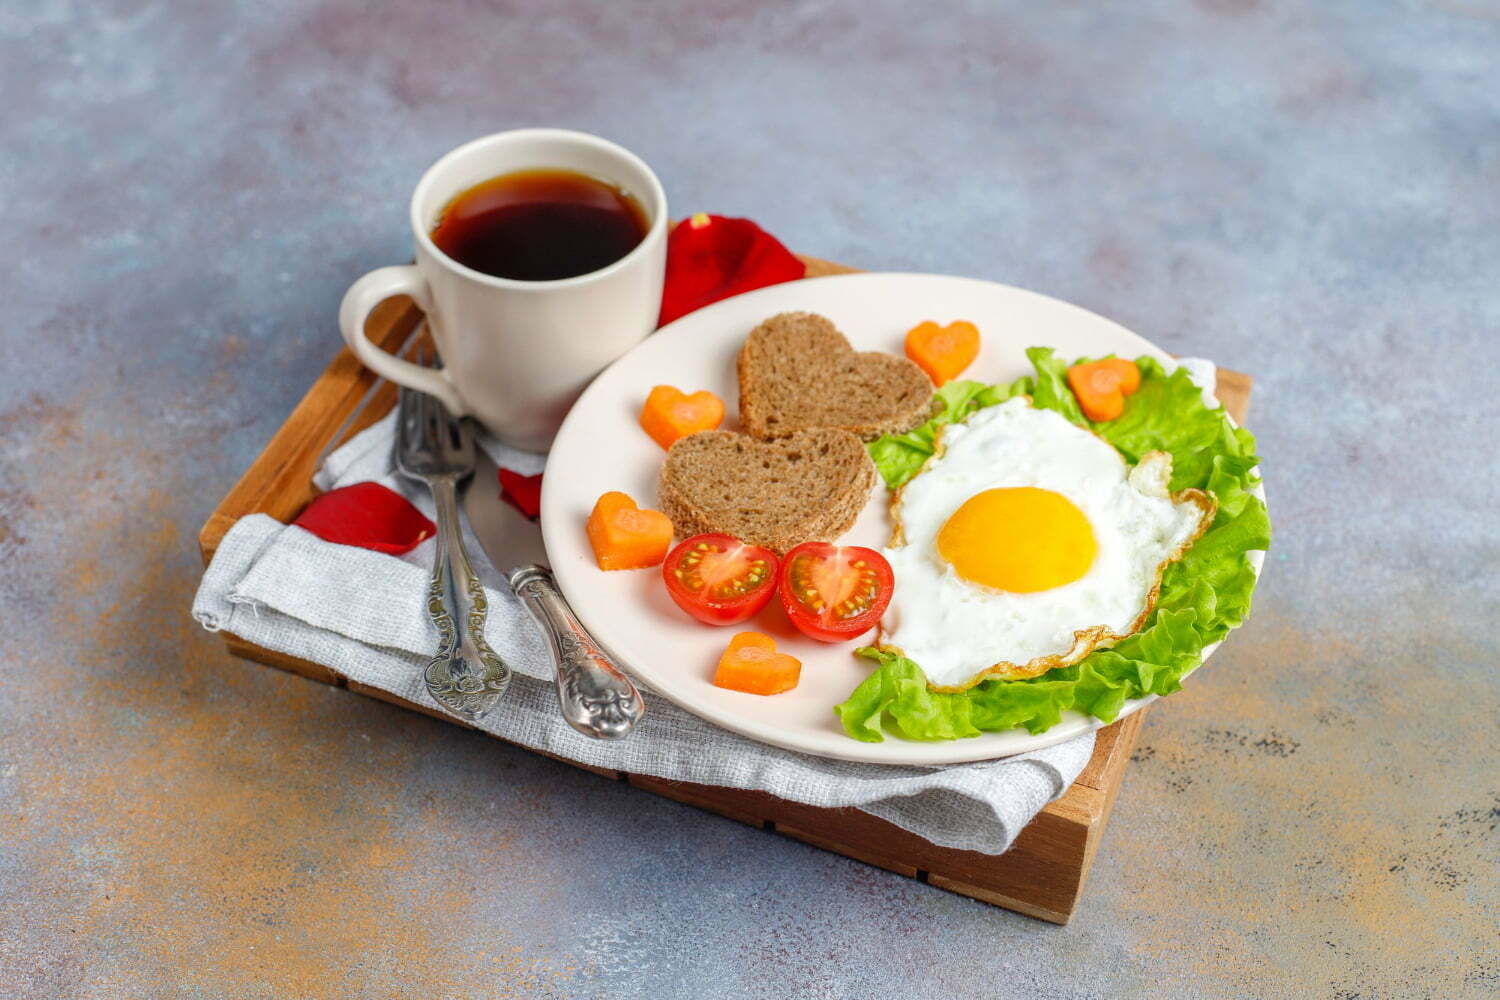 desayuno con huevos fritos y pan en forma de corazón y verduras frescas | alimentos que debes evitar en el desayuno